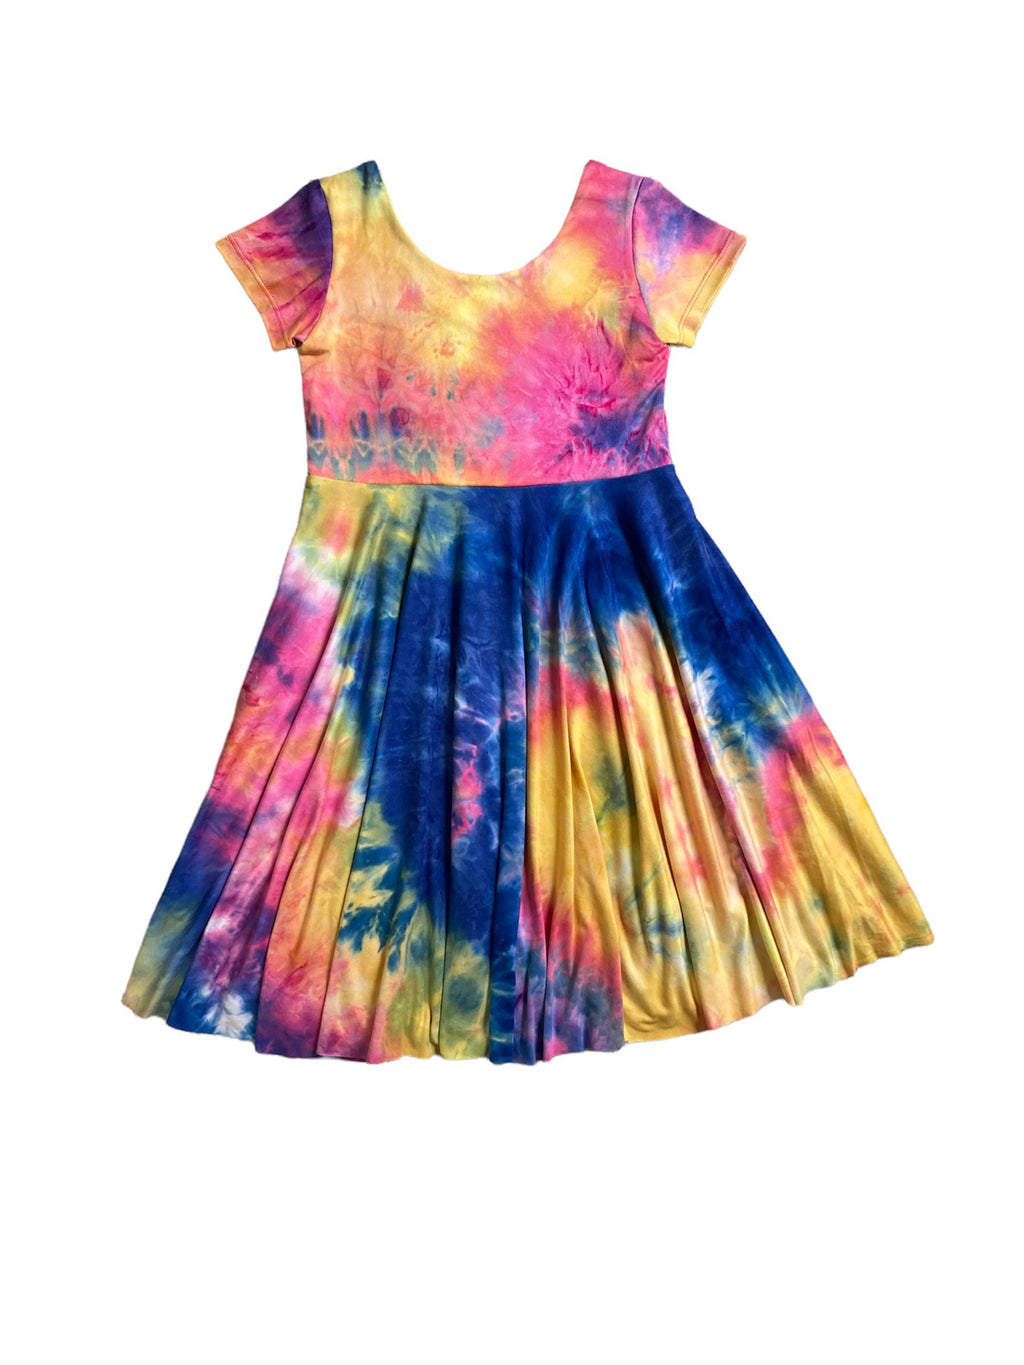 Kids Short Sleeve Twirly Dress in Summer Tie Dye